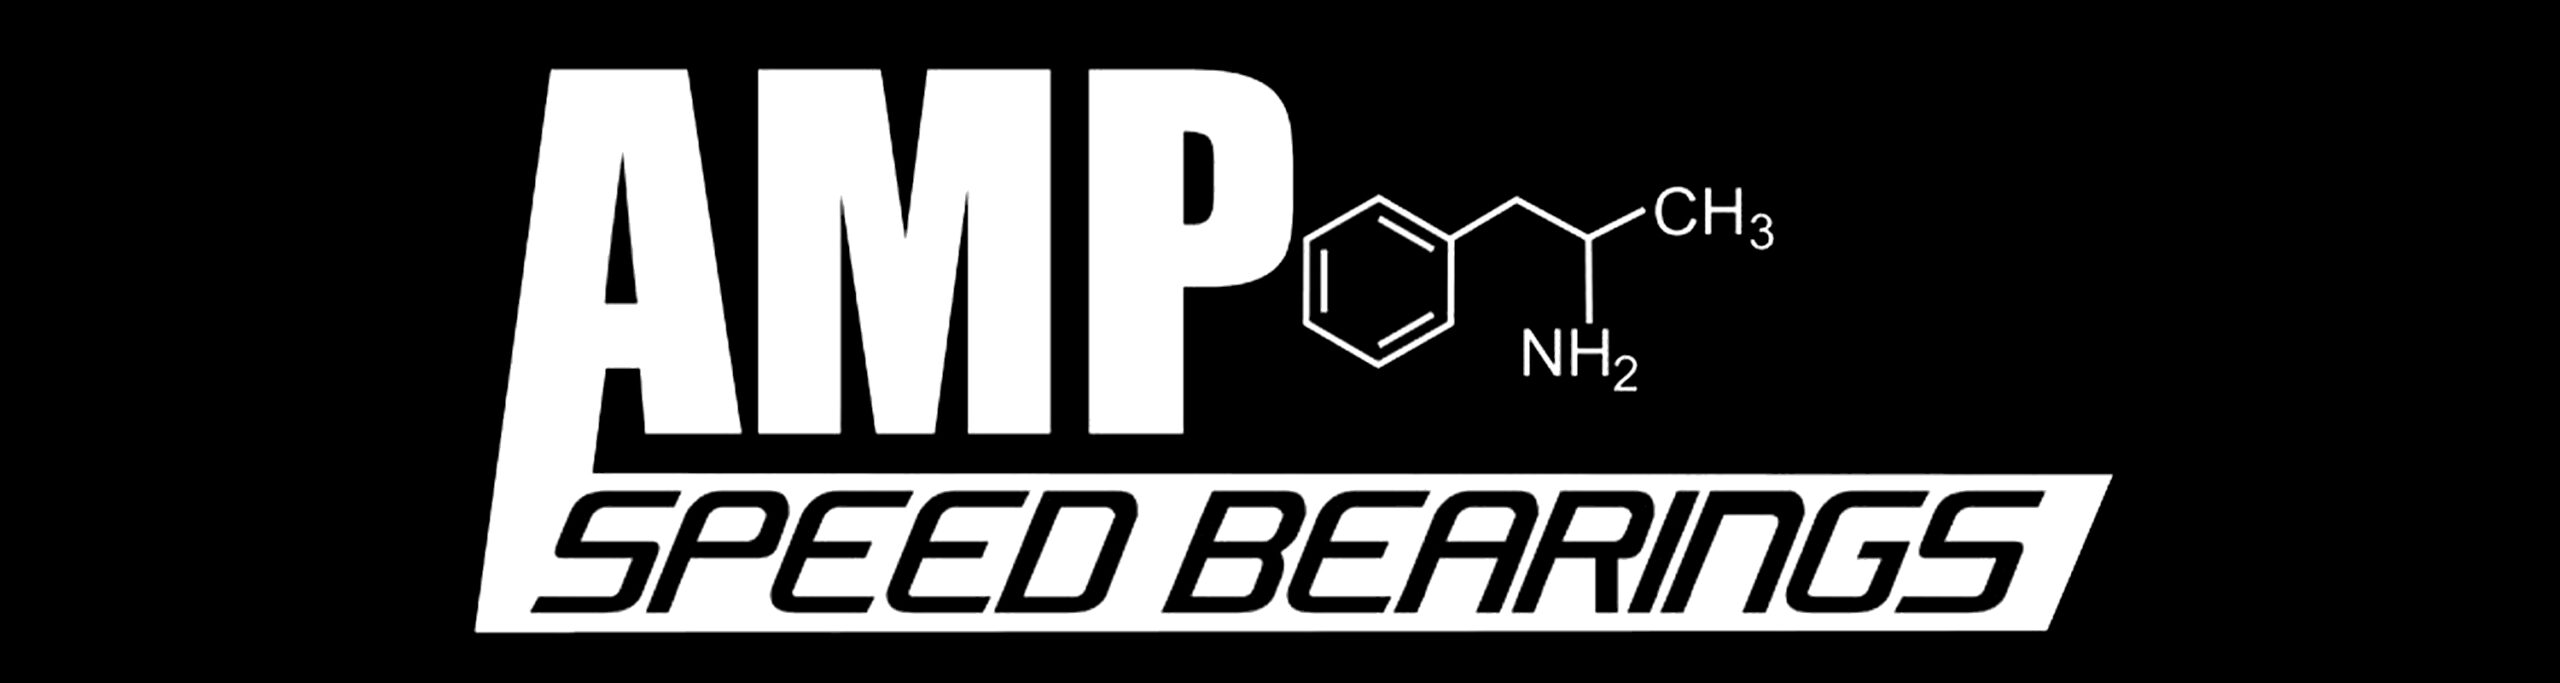 Amphetamine Longboard & Fast Skateboard Bearings